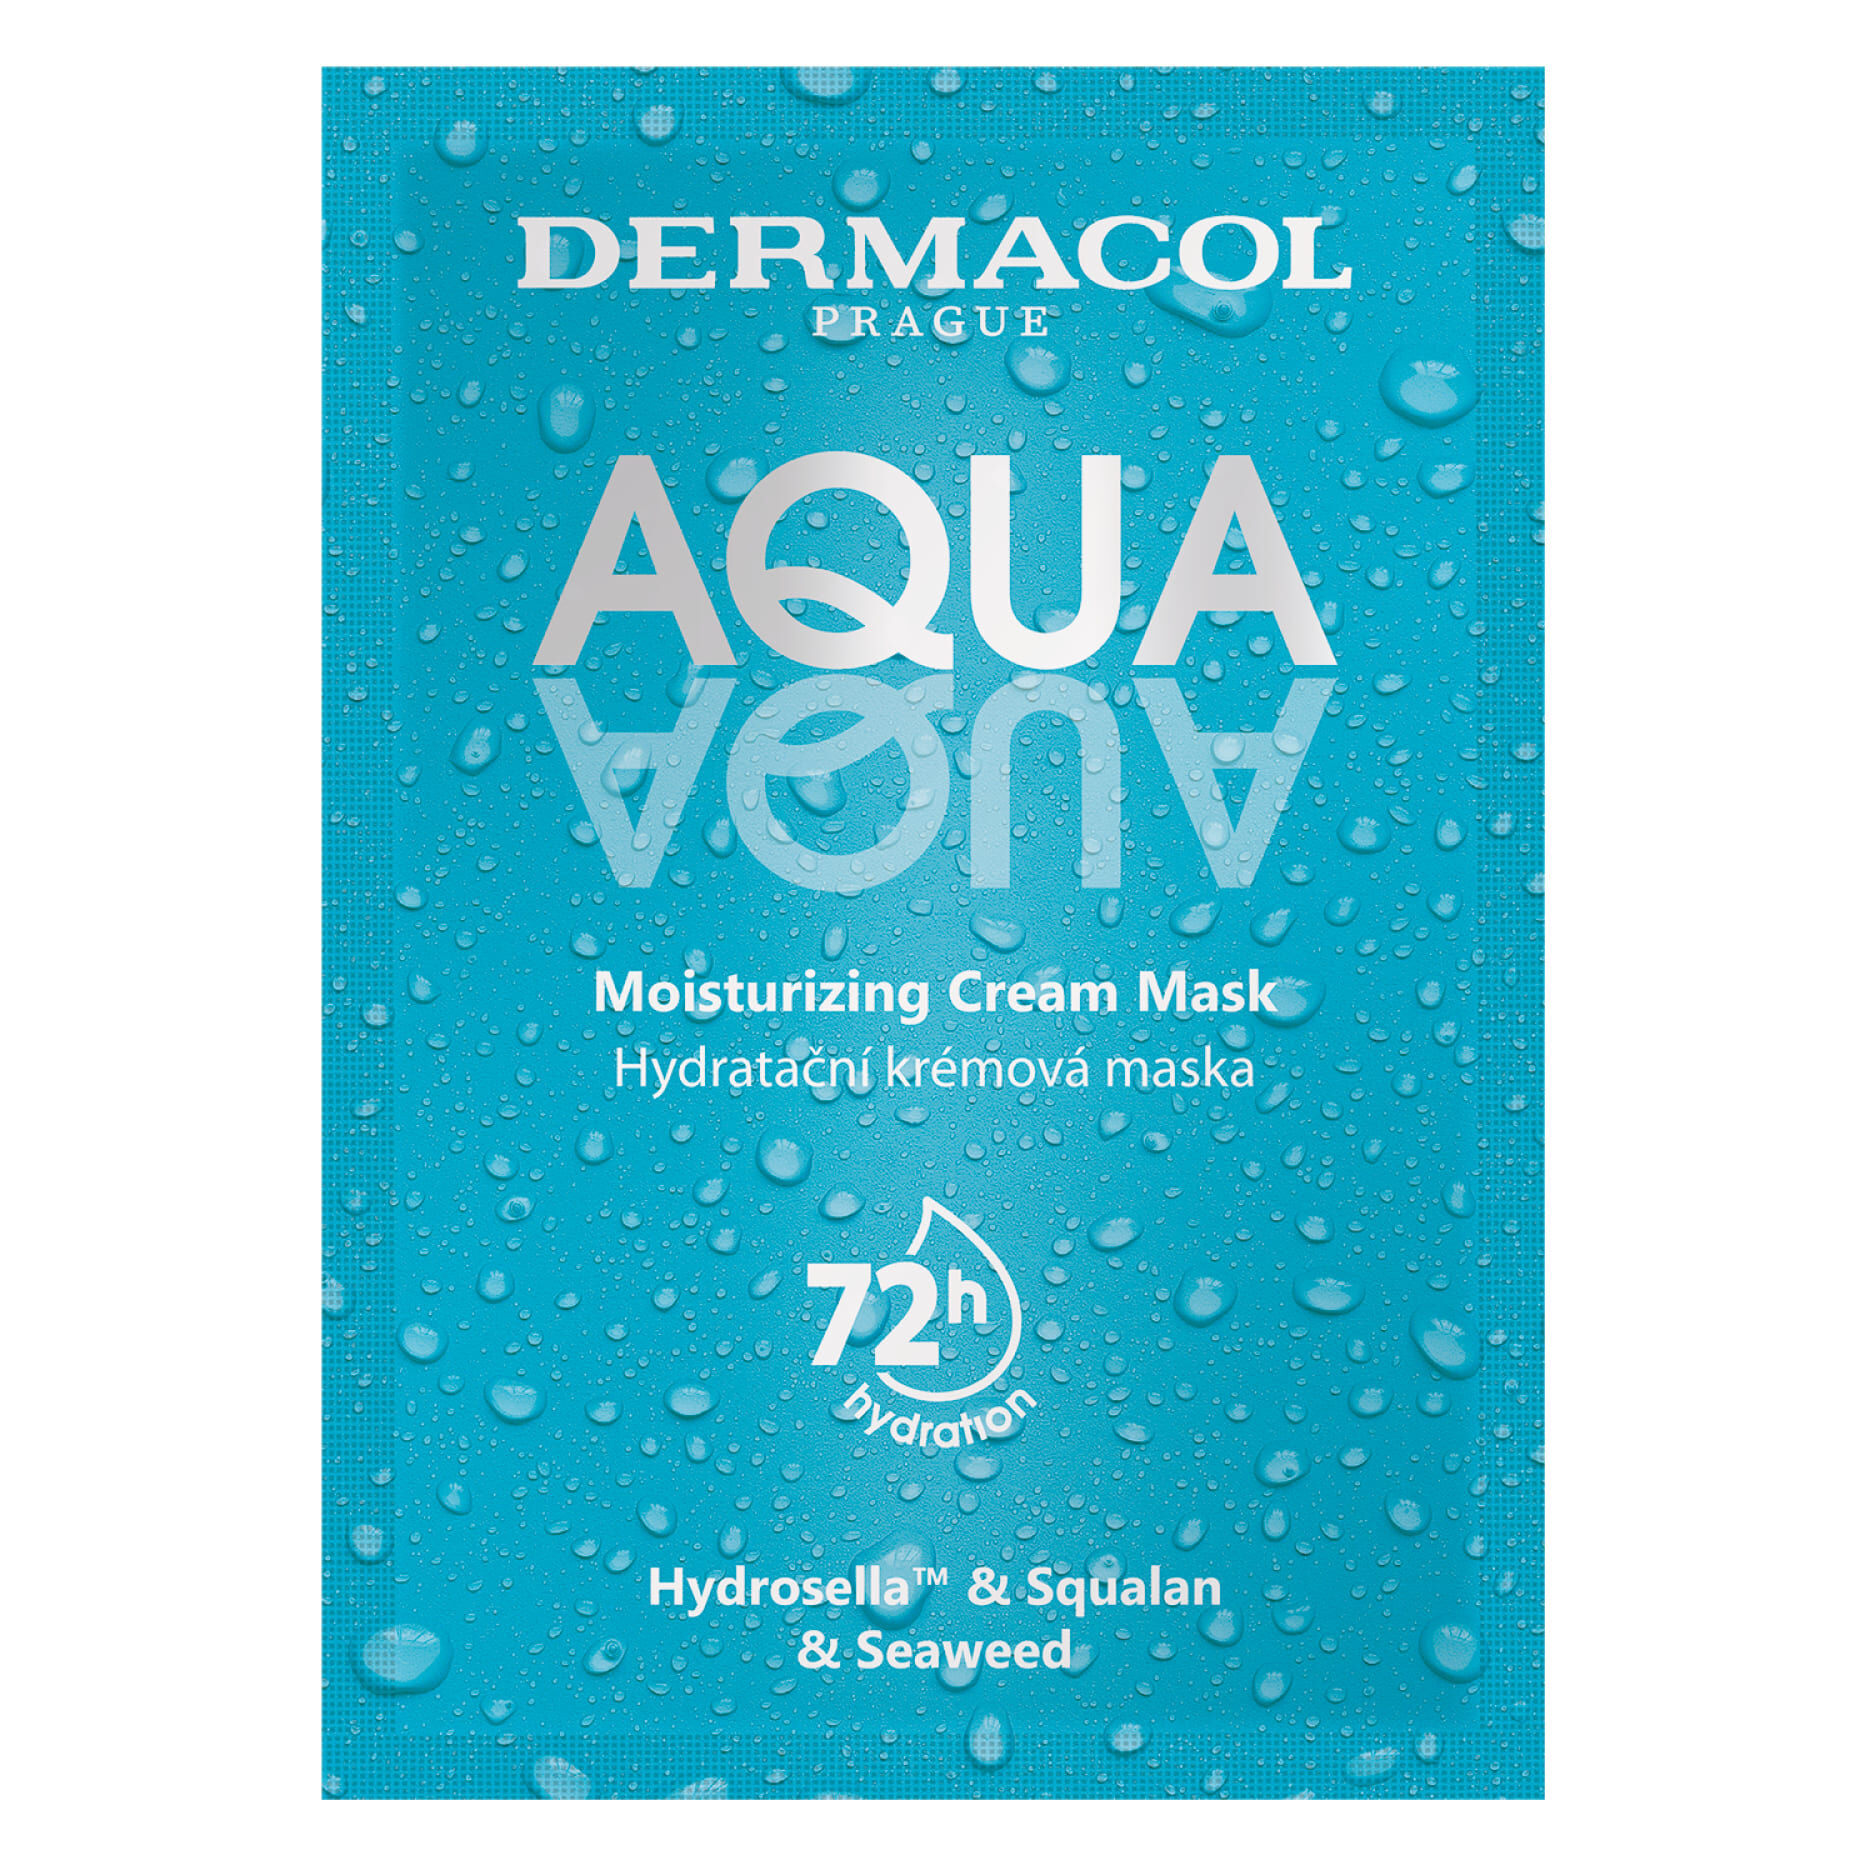 Увлажняющая маска для лица Dermacol Aqua, 2x8 мл маска для лица гельтек aqua pleasure 1 шт